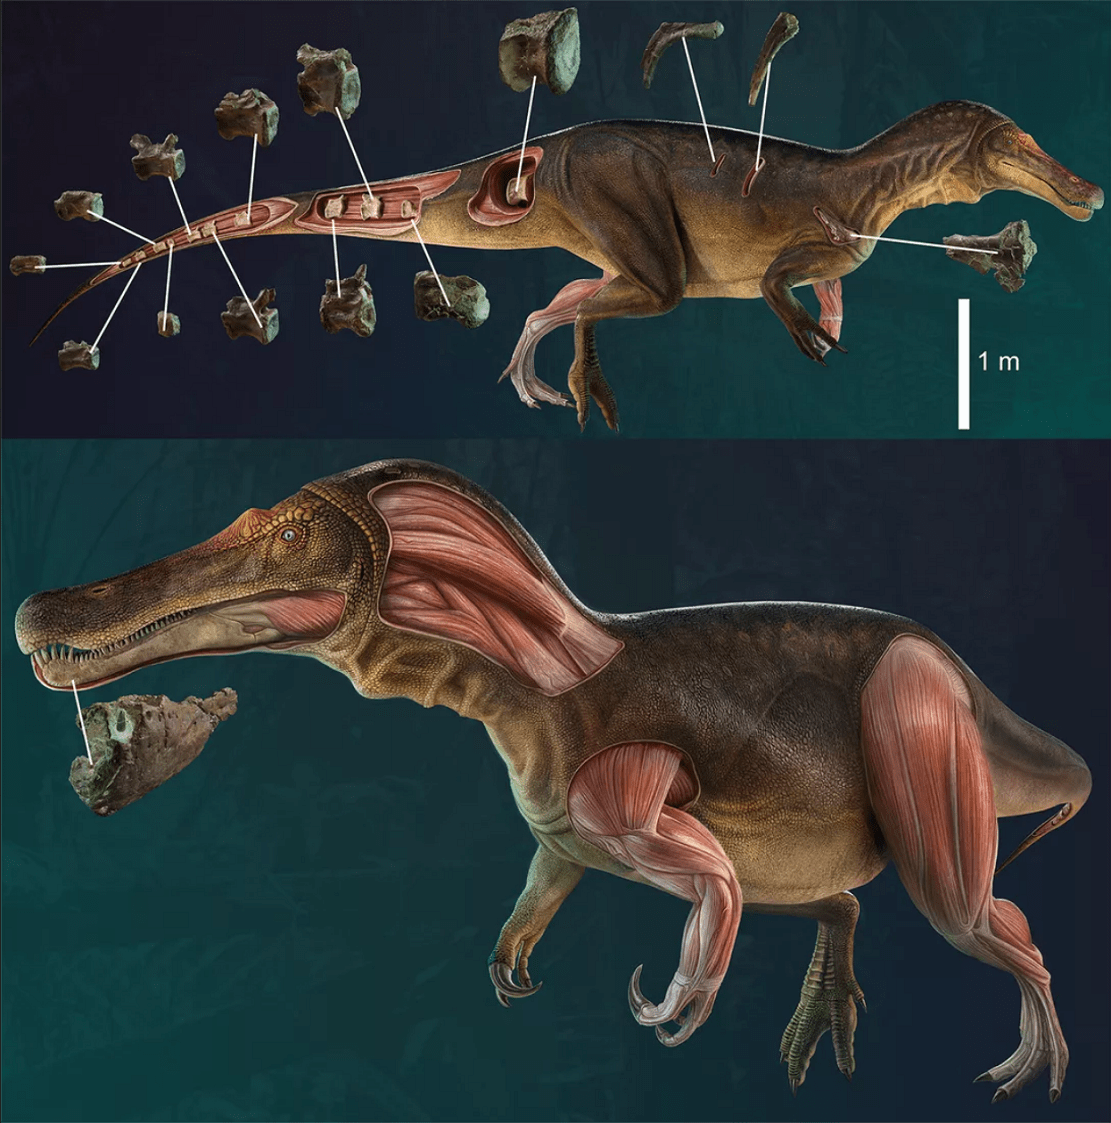 古生物学家发现一种新棘龙类恐龙:鳄鱼脸,生活在1